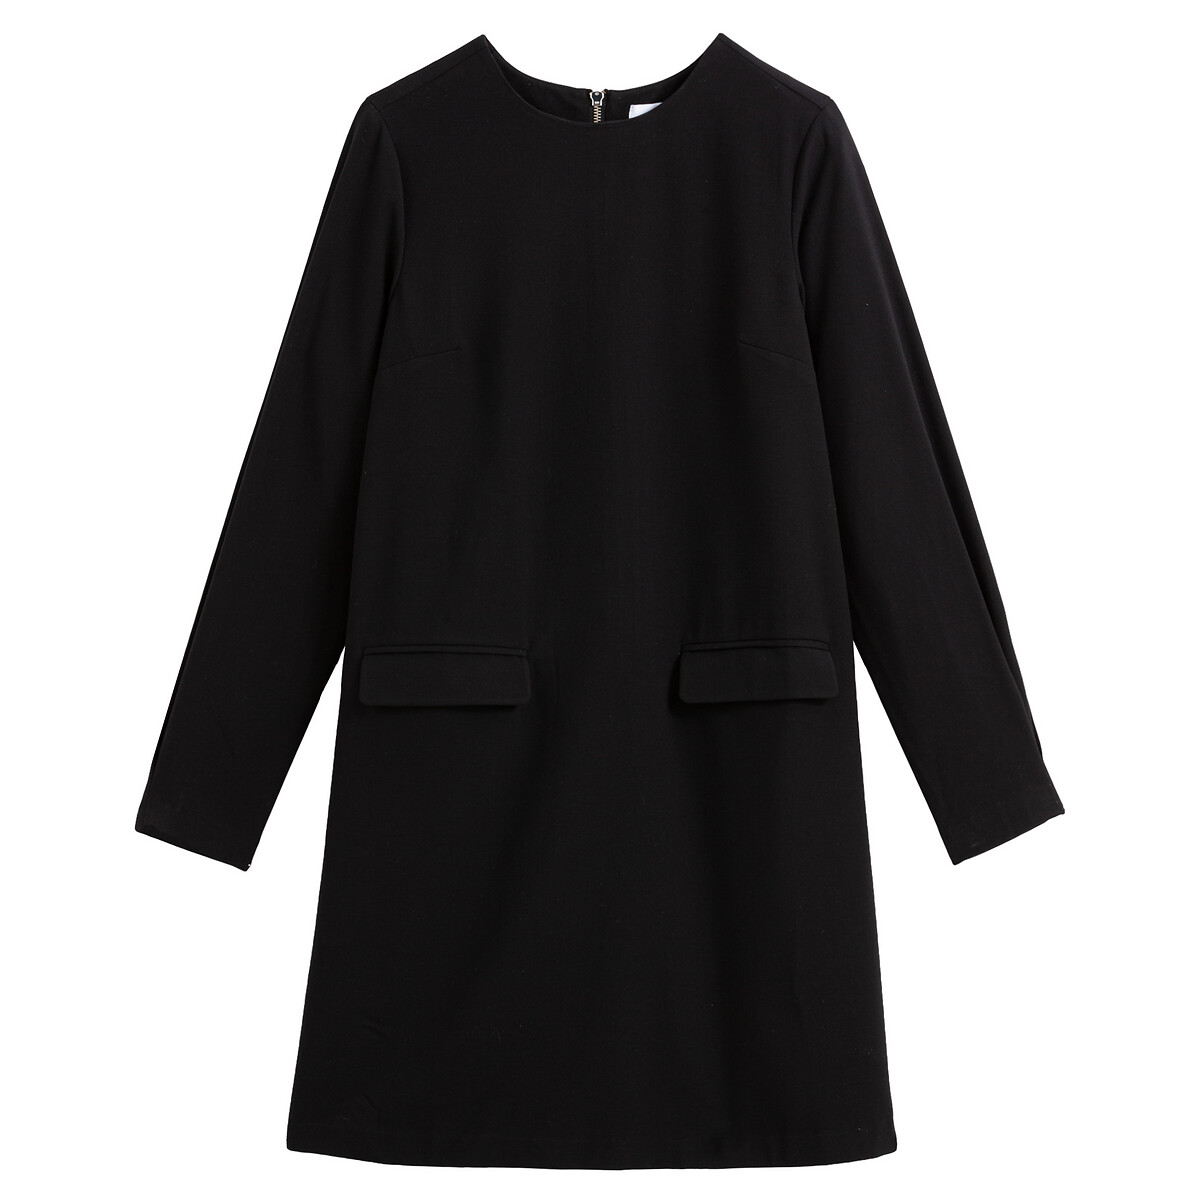 Платье La Redoute Короткое прямое с круглым вырезом с длинными рукавами 38 (FR) - 44 (RUS) черный, размер 38 (FR) - 44 (RUS) Короткое прямое с круглым вырезом с длинными рукавами 38 (FR) - 44 (RUS) черный - фото 5